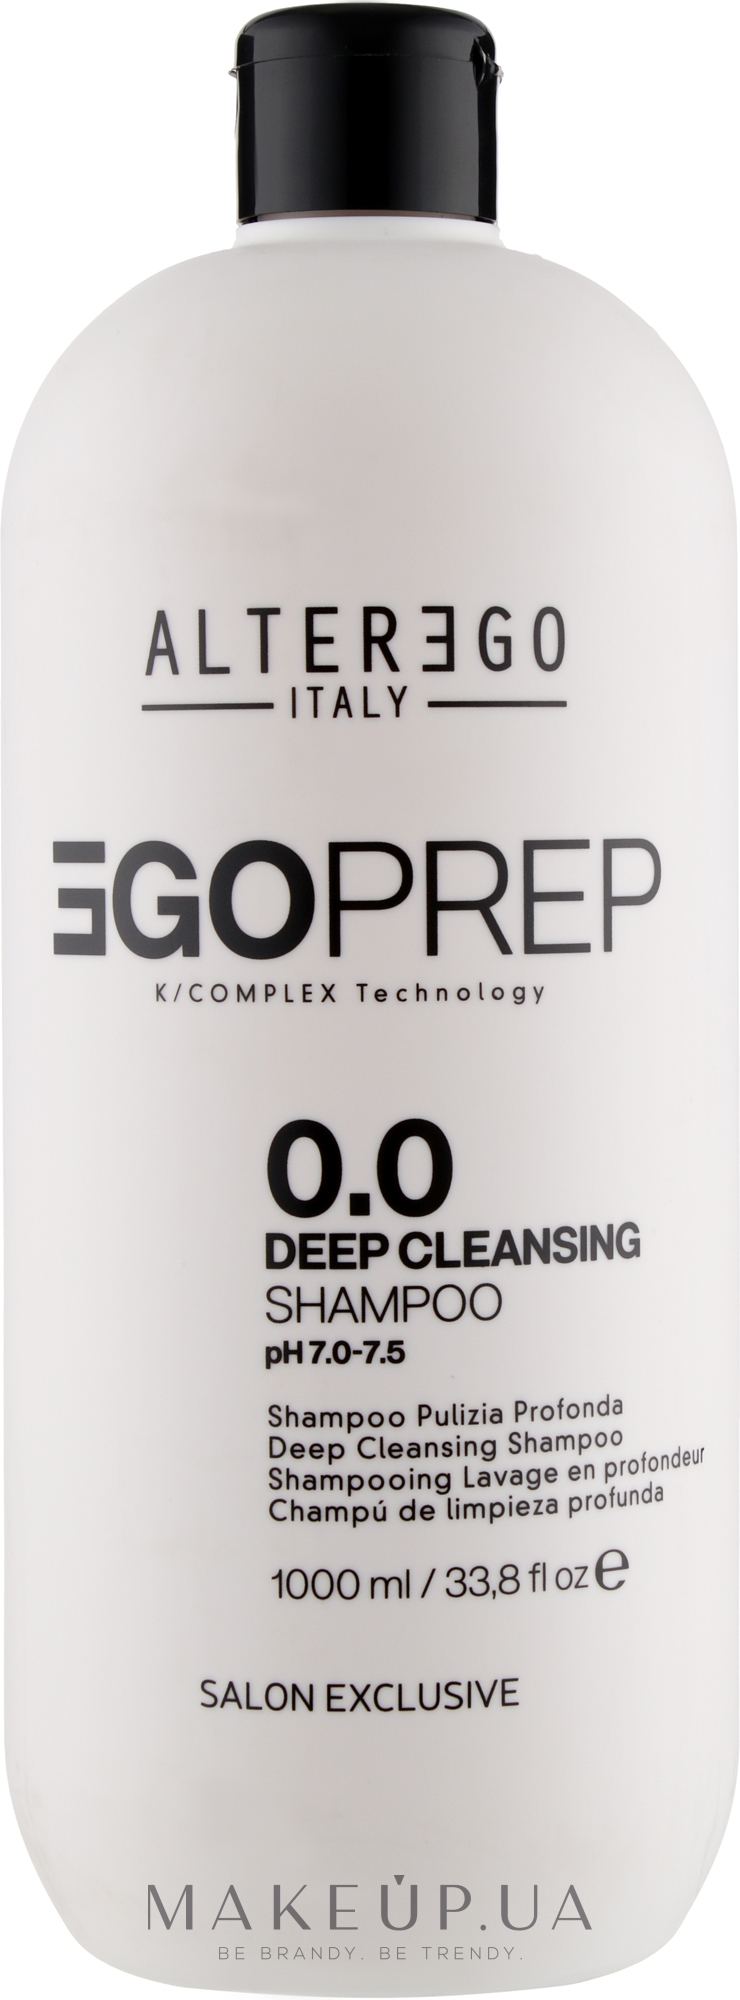 Глубоко очищающий шампунь для волос - Alter Ego Egoliss Egoprep 0.0 Deep Cleansing Shampo — фото 1000ml